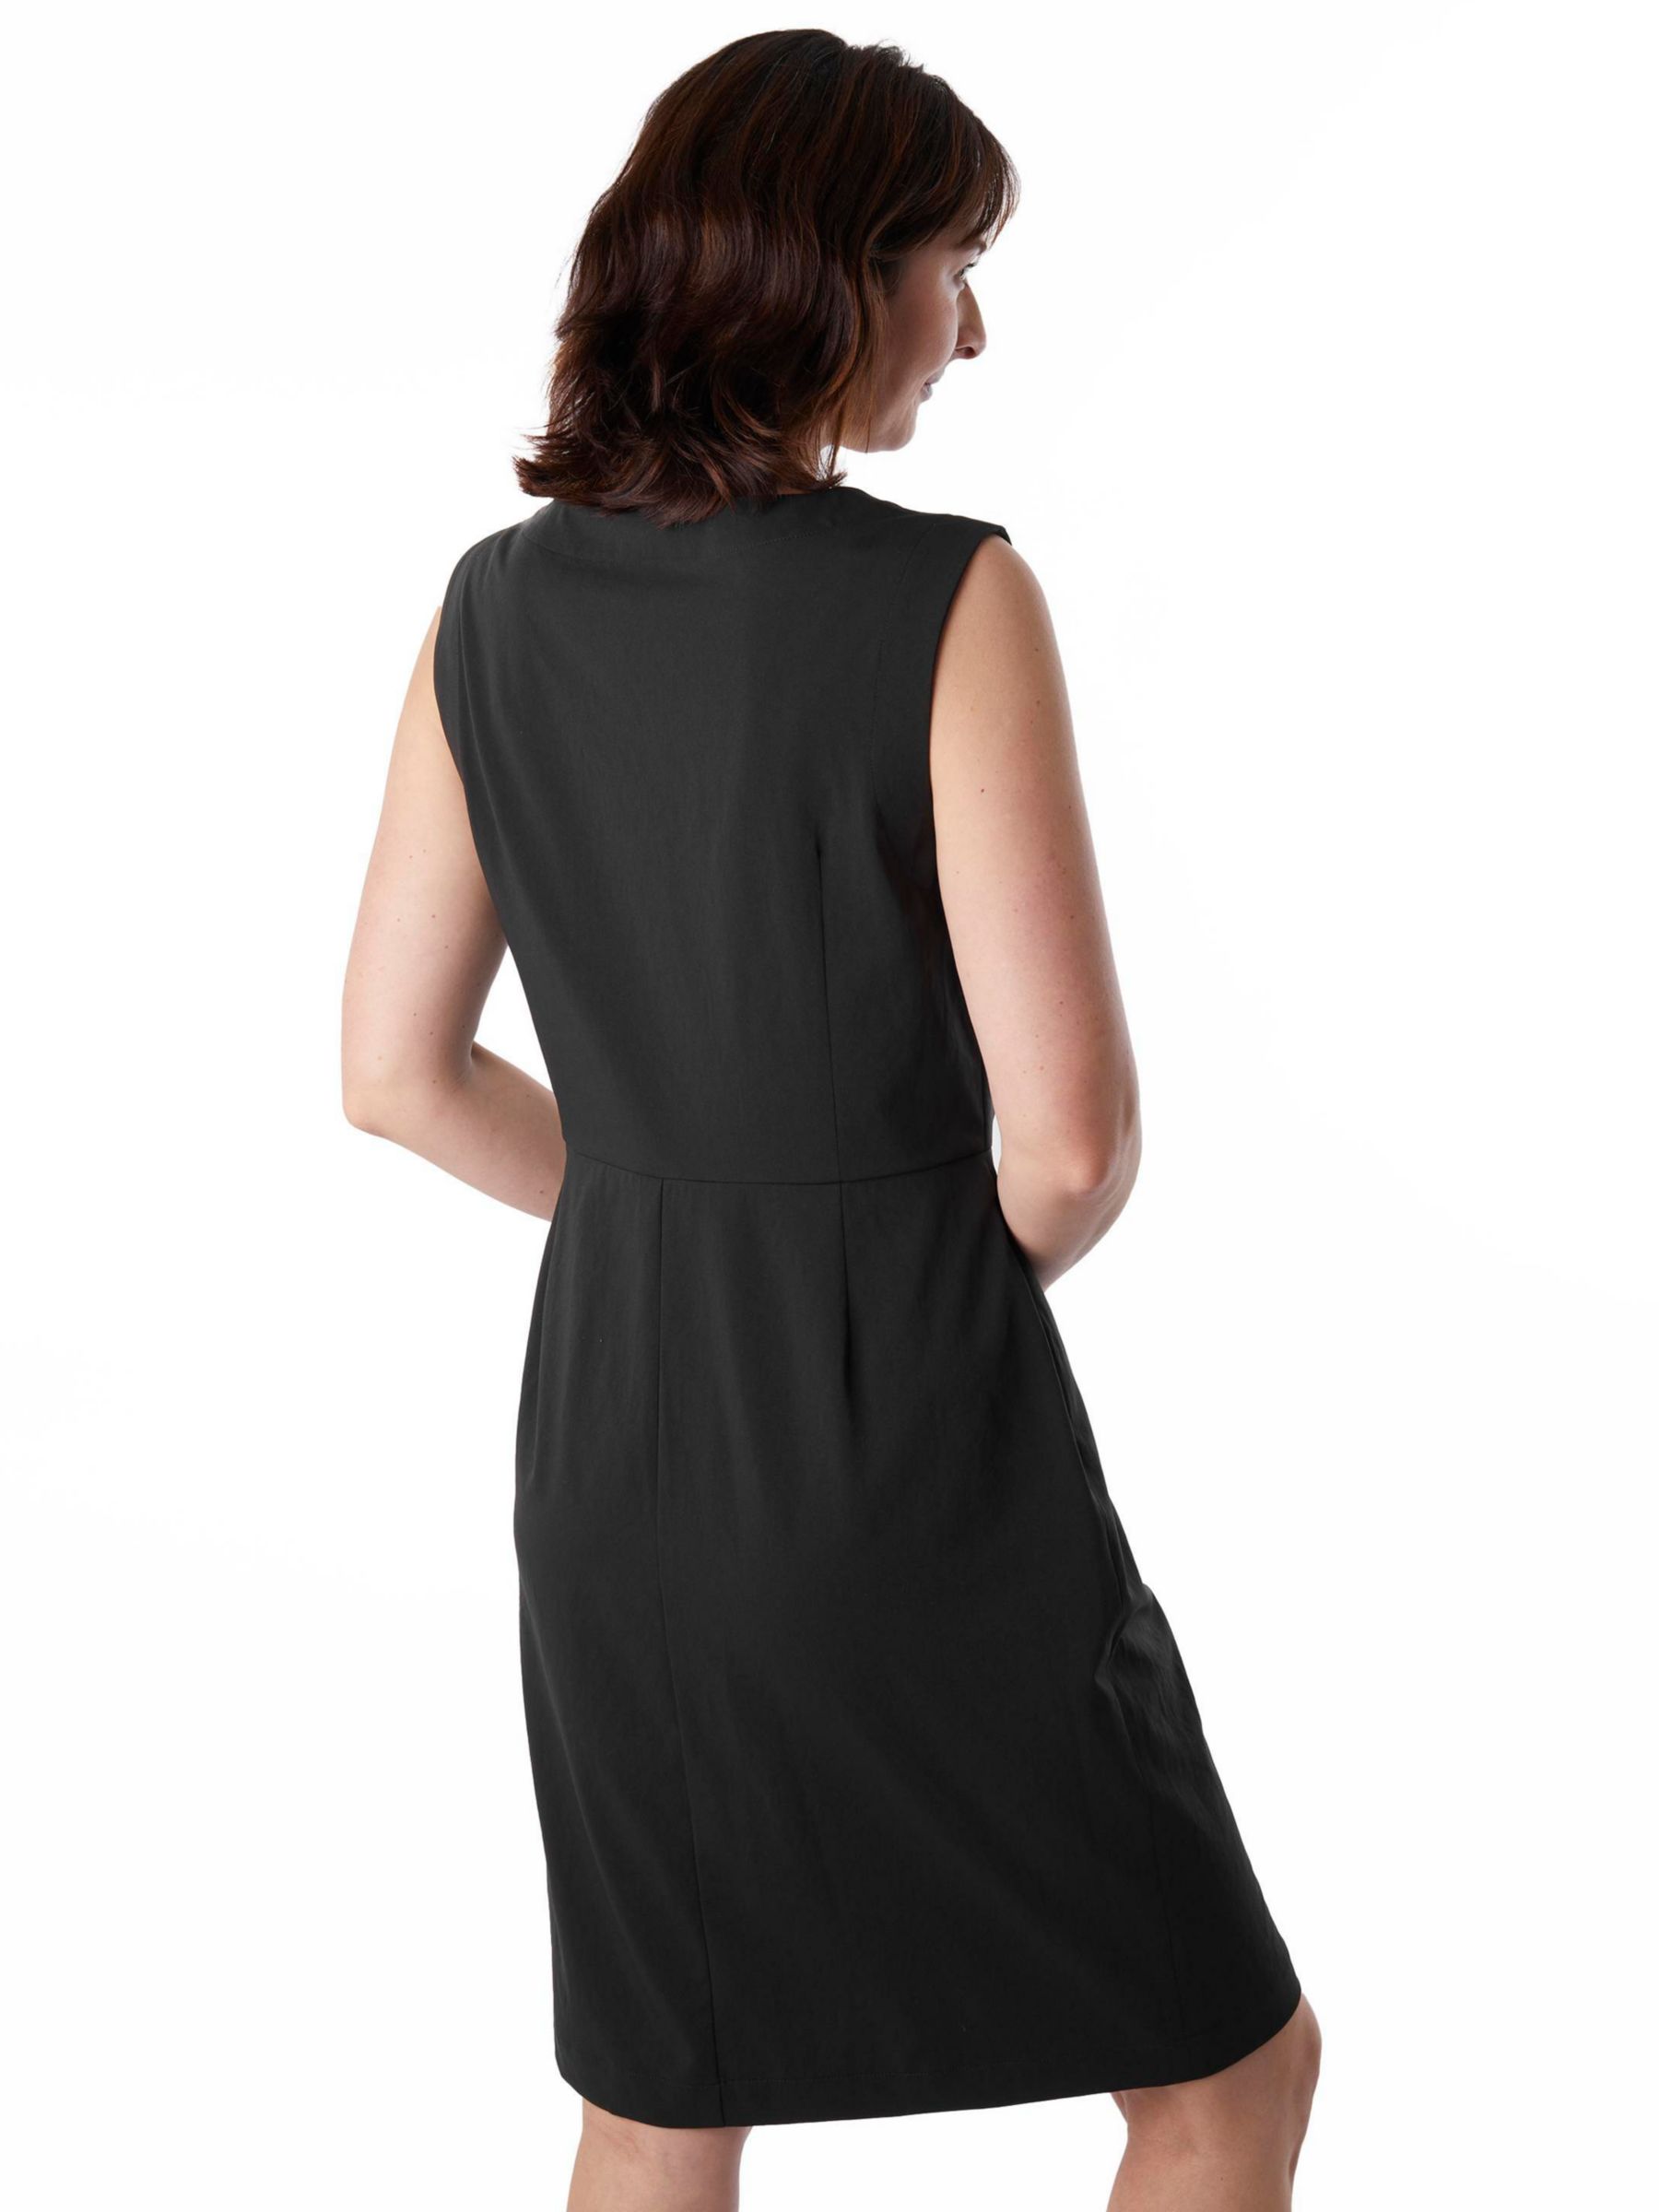 Buy Rohan Luna Knee Length Shift Dress, Black Online at johnlewis.com